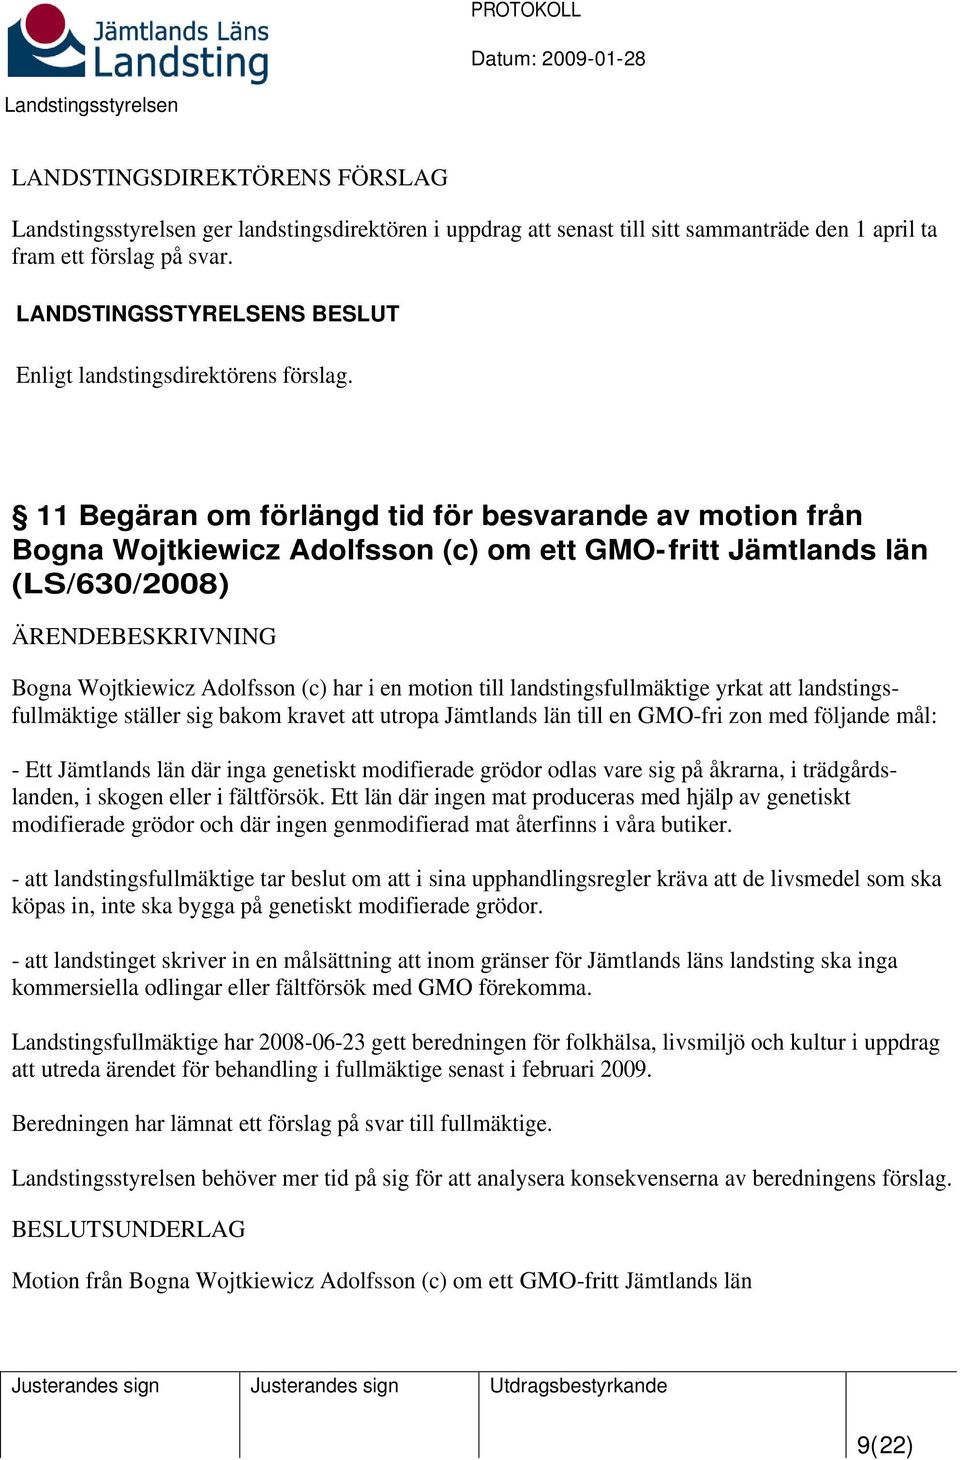 landstingsfullmäktige yrkat att landstingsfullmäktige ställer sig bakom kravet att utropa Jämtlands län till en GMO-fri zon med följande mål: - Ett Jämtlands län där inga genetiskt modifierade grödor